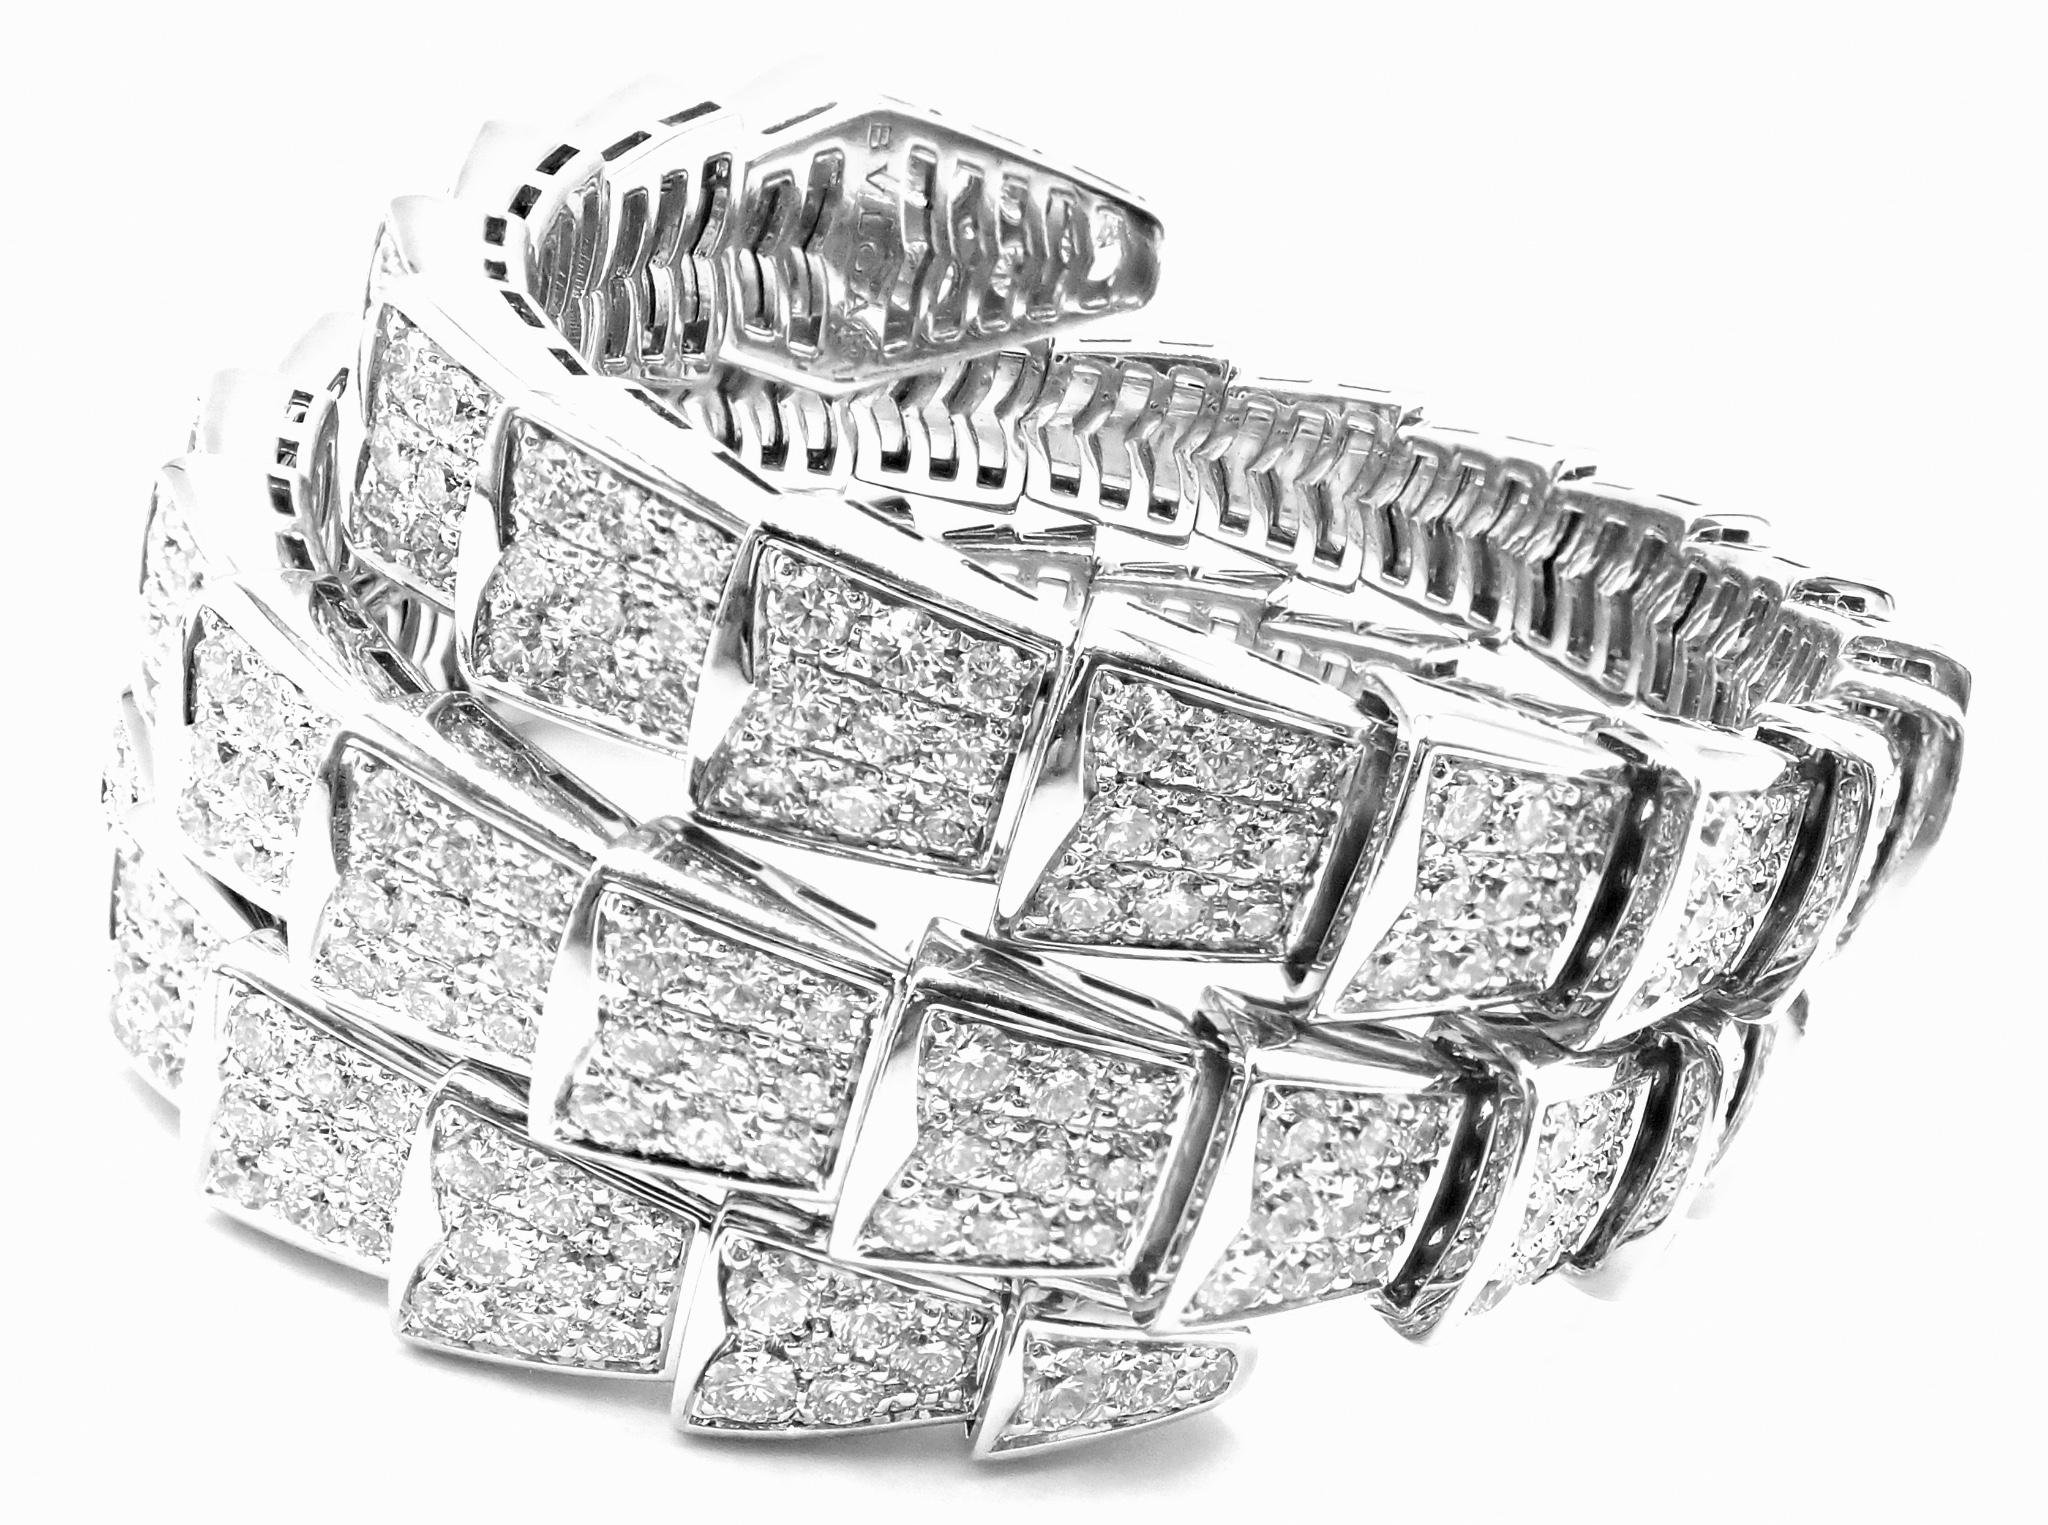 Bracelet en or blanc 18k diamant Serpenti Viper Snake Two-Coil Bangle by Bulgari. 
Avec des diamants ronds de taille brillante, pureté VVS1, couleur E, poids total approximatif de 15,03 ct.
Le bracelet Serpenti à deux spires de Bvlgari, en or blanc